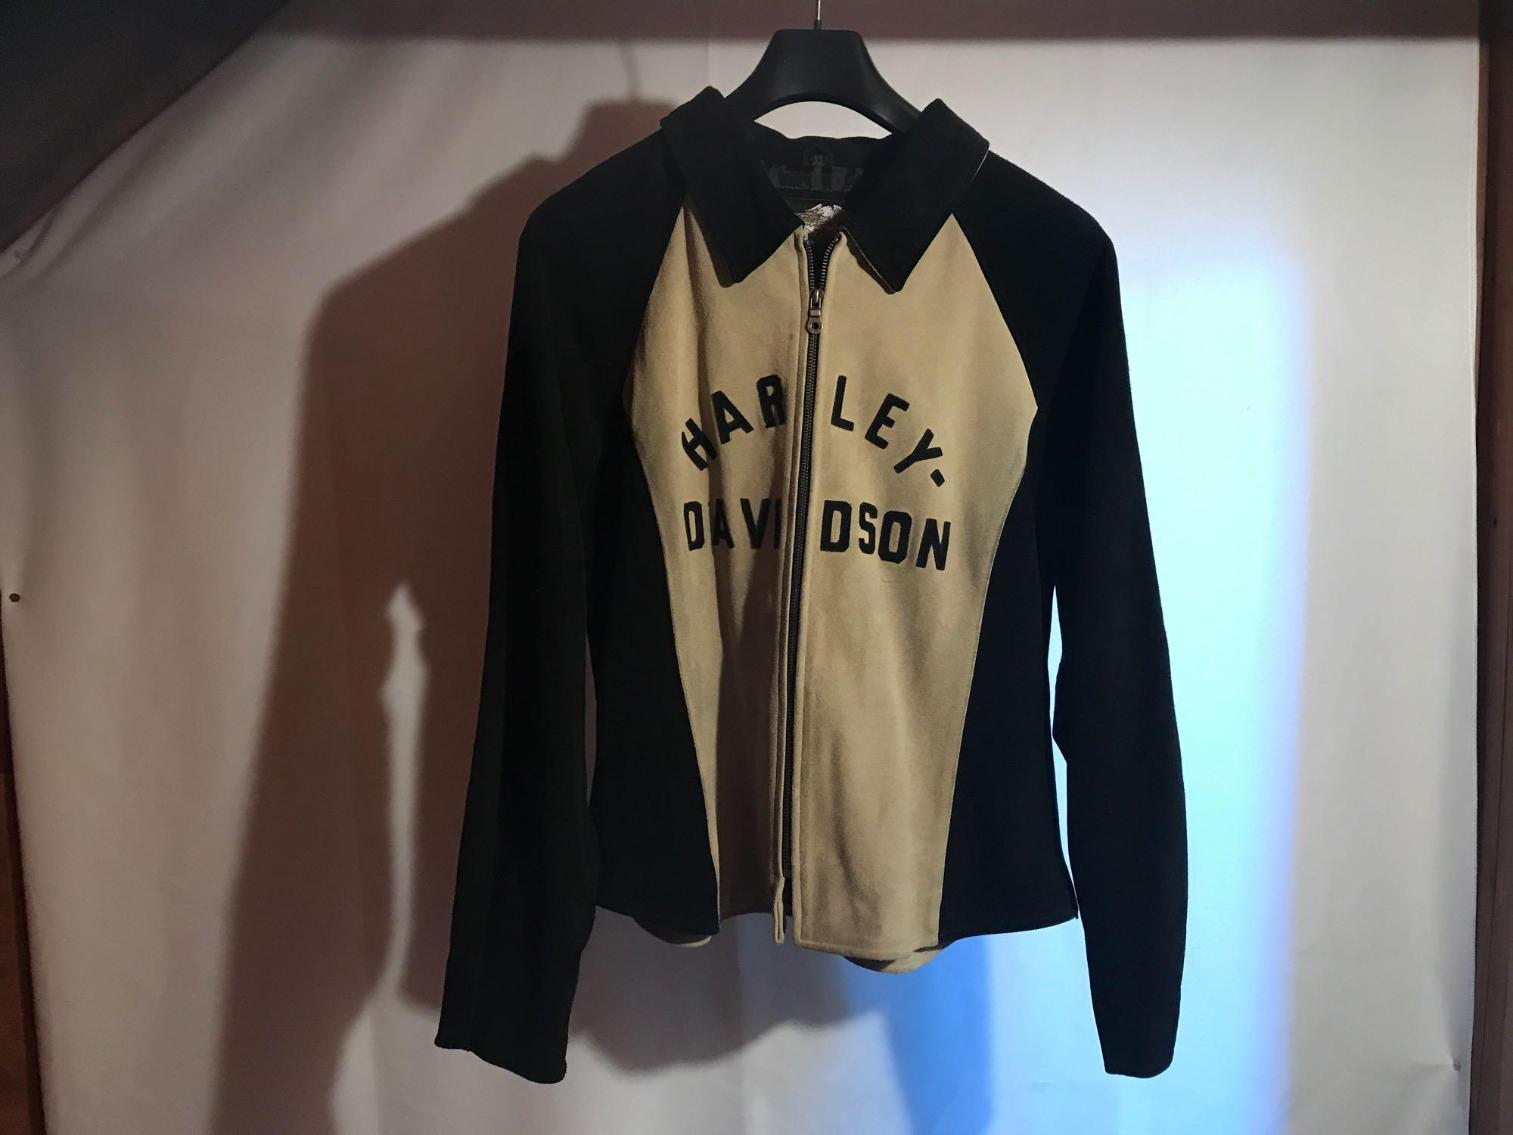 Image for Vintage Harley Davidson Suede Jacket